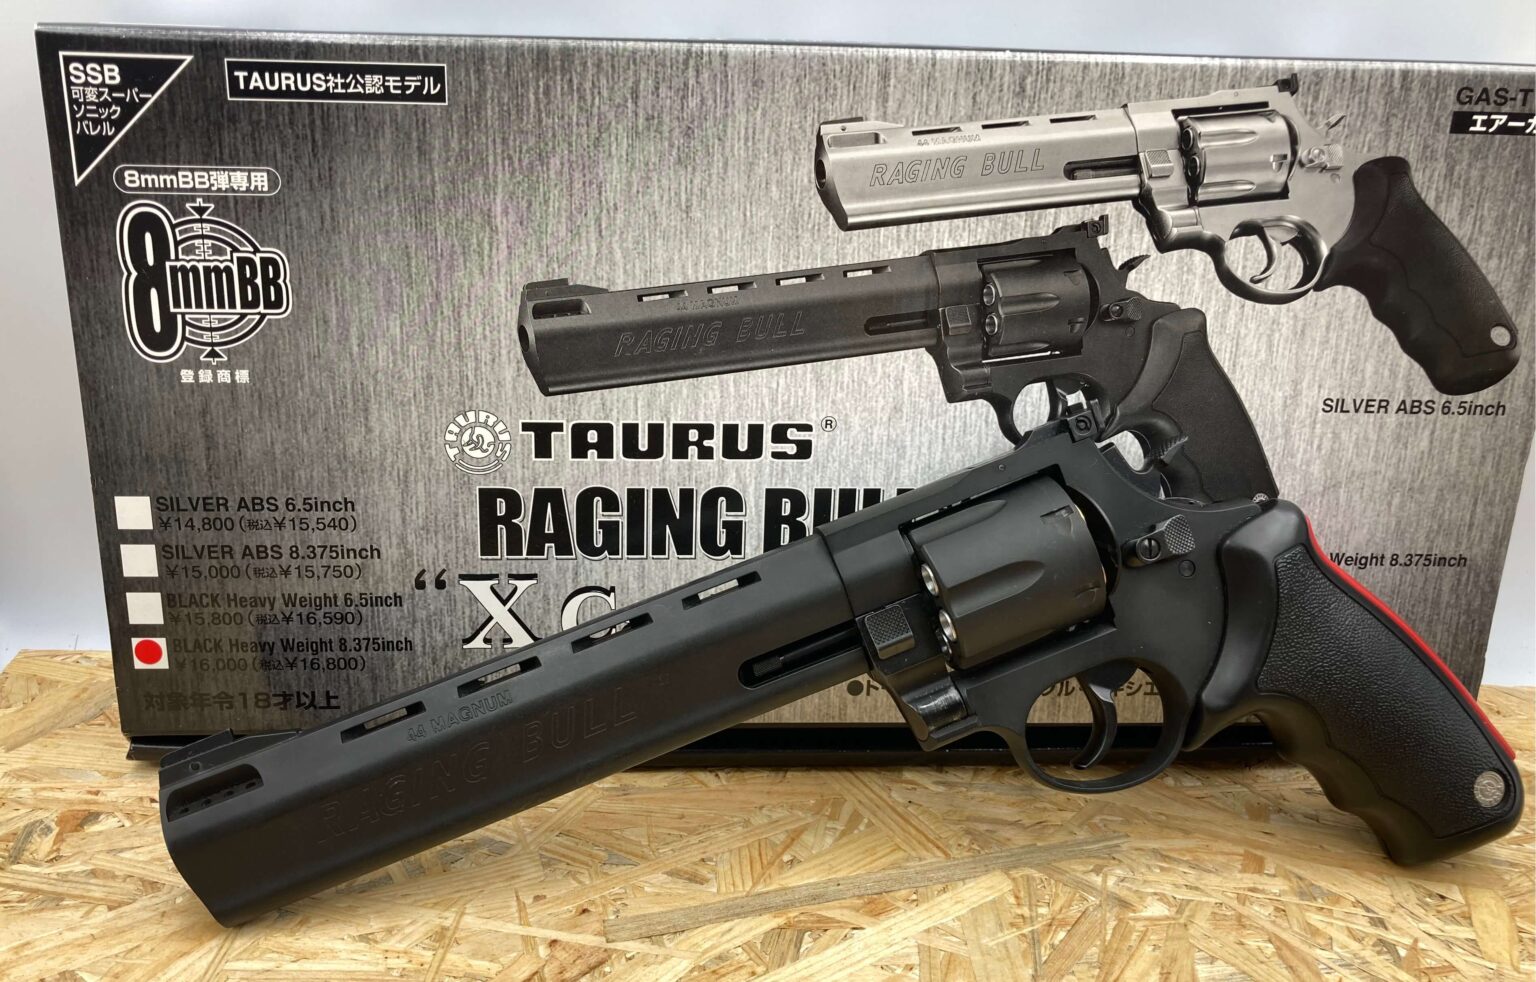 マルシン トーラス レイジングブル 8.375インチ ブラック 8mmBB弾版 